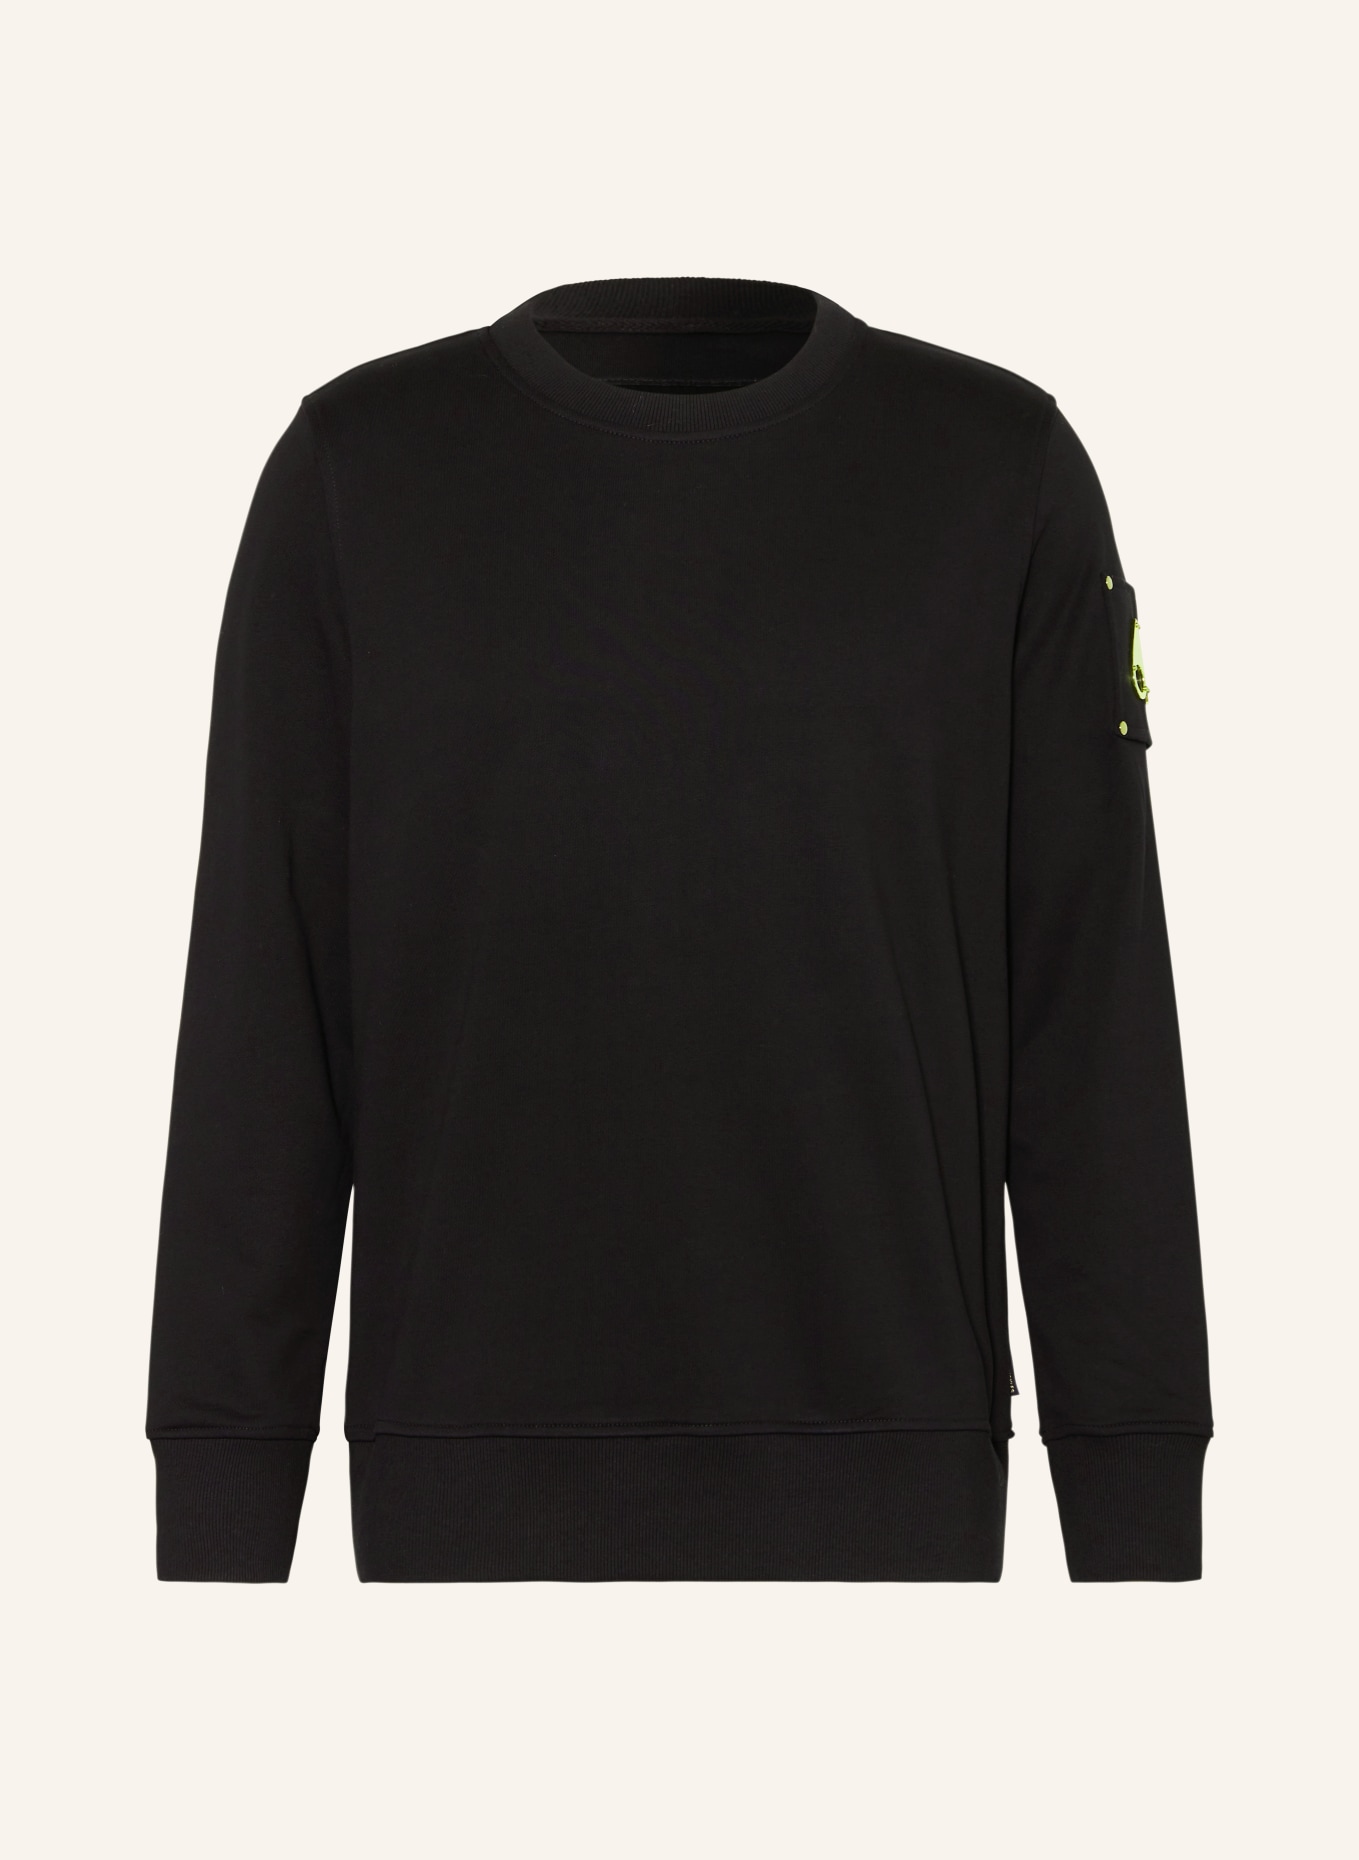 MOOSE KNUCKLES Sweatshirt SNYDER, Farbe: SCHWARZ (Bild 1)